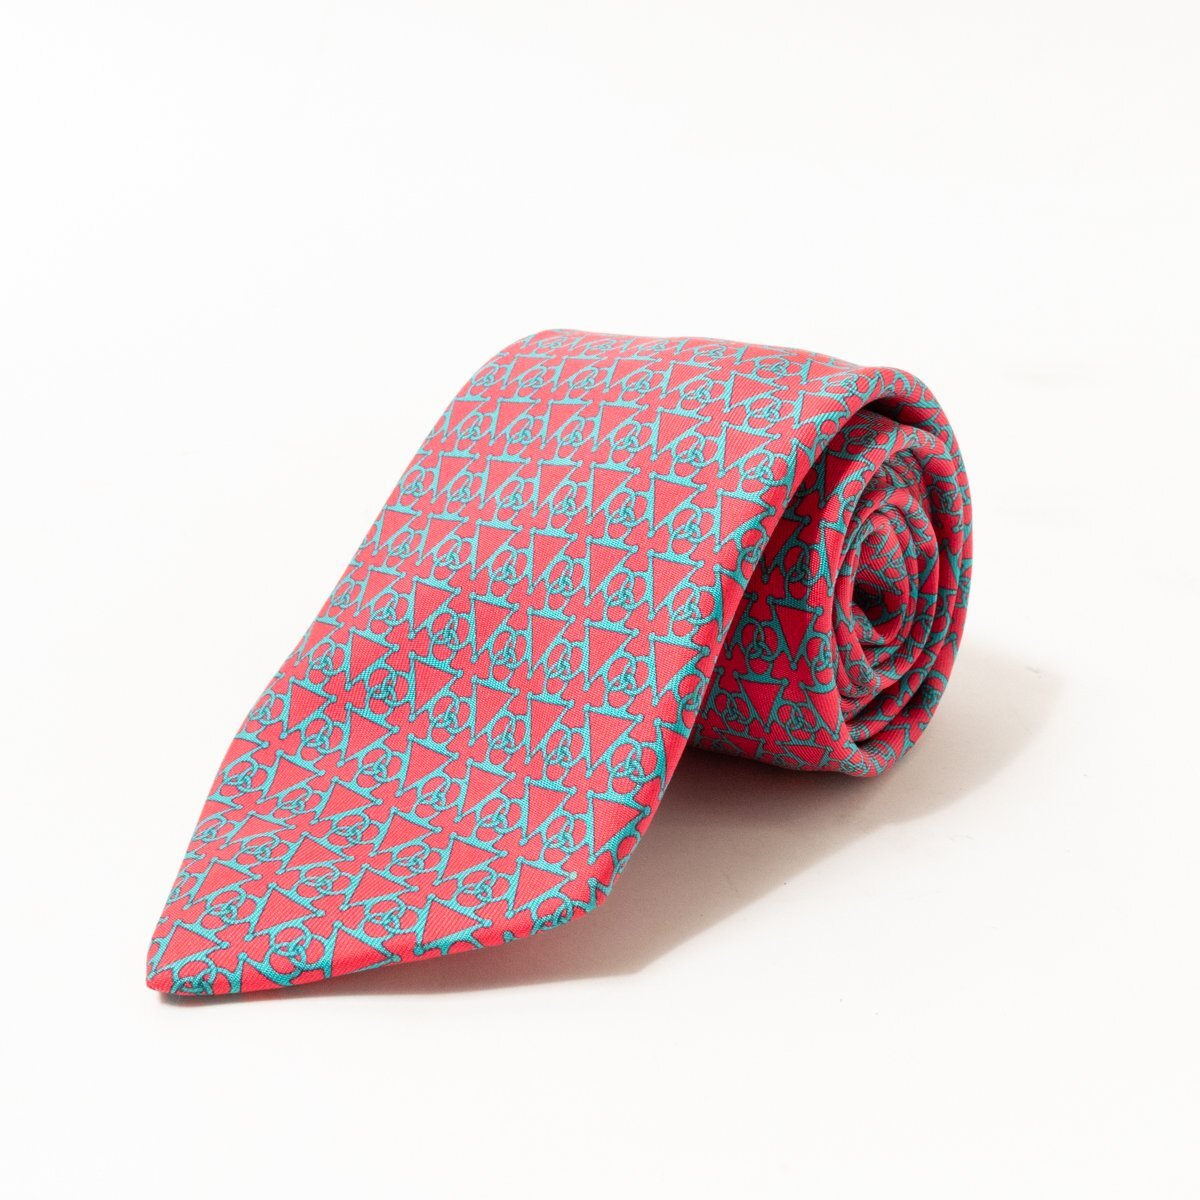 HERMES Hermes шелк 100% Франция производства галстук общий рисунок красный красный мужской джентльмен мужчина платье бизнес формальный elegant взрослый 